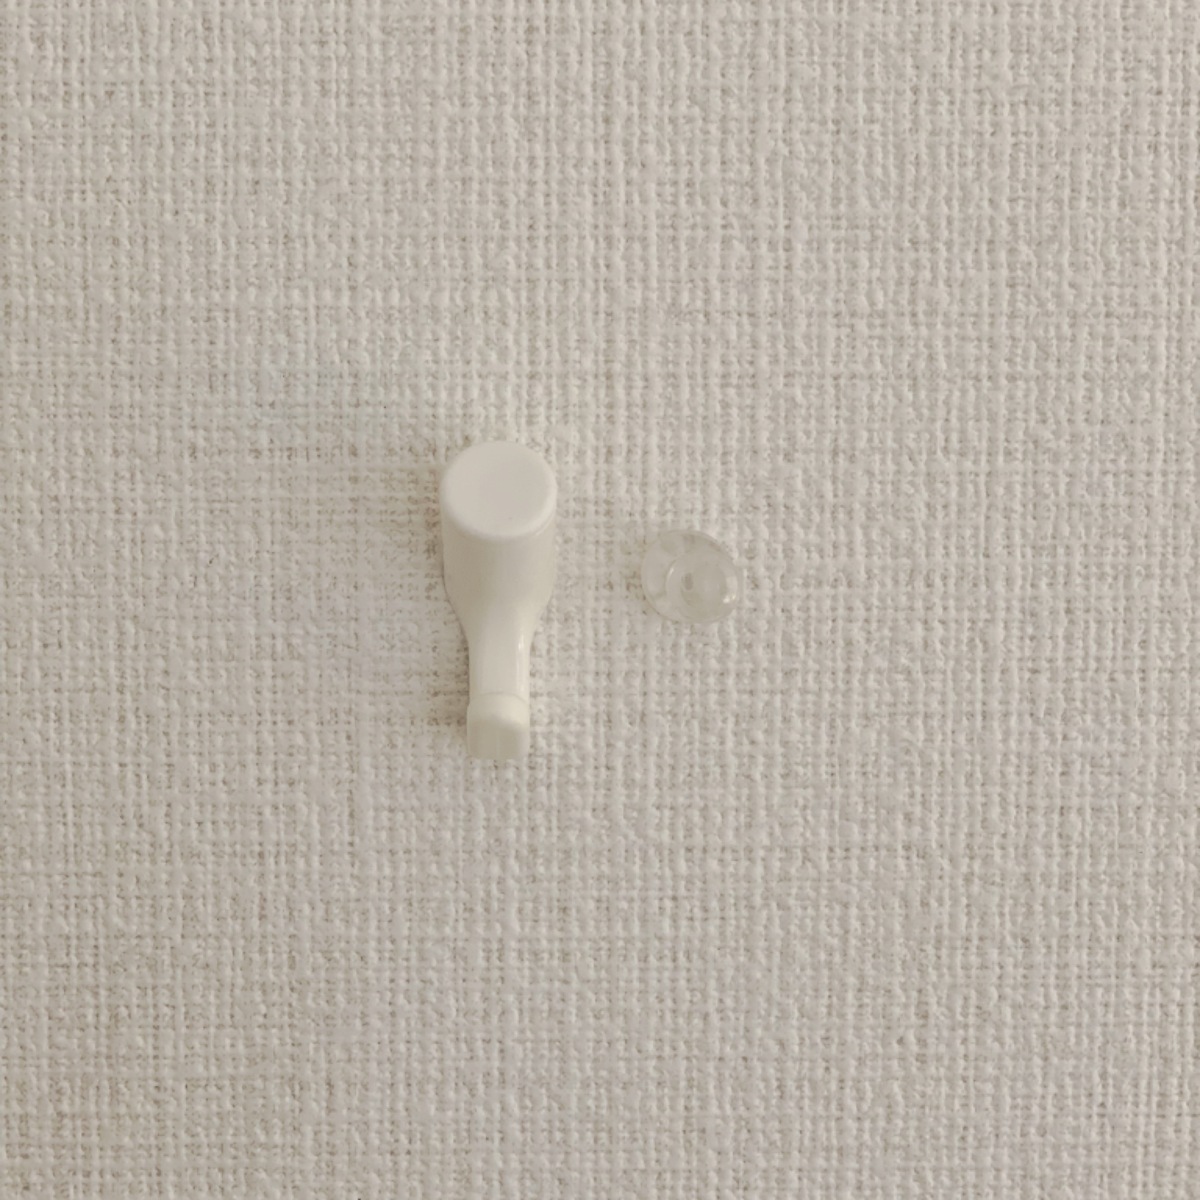 ダイソーのフック 壁紙に優しい便利な壁掛けアイテム マイナビ子育て